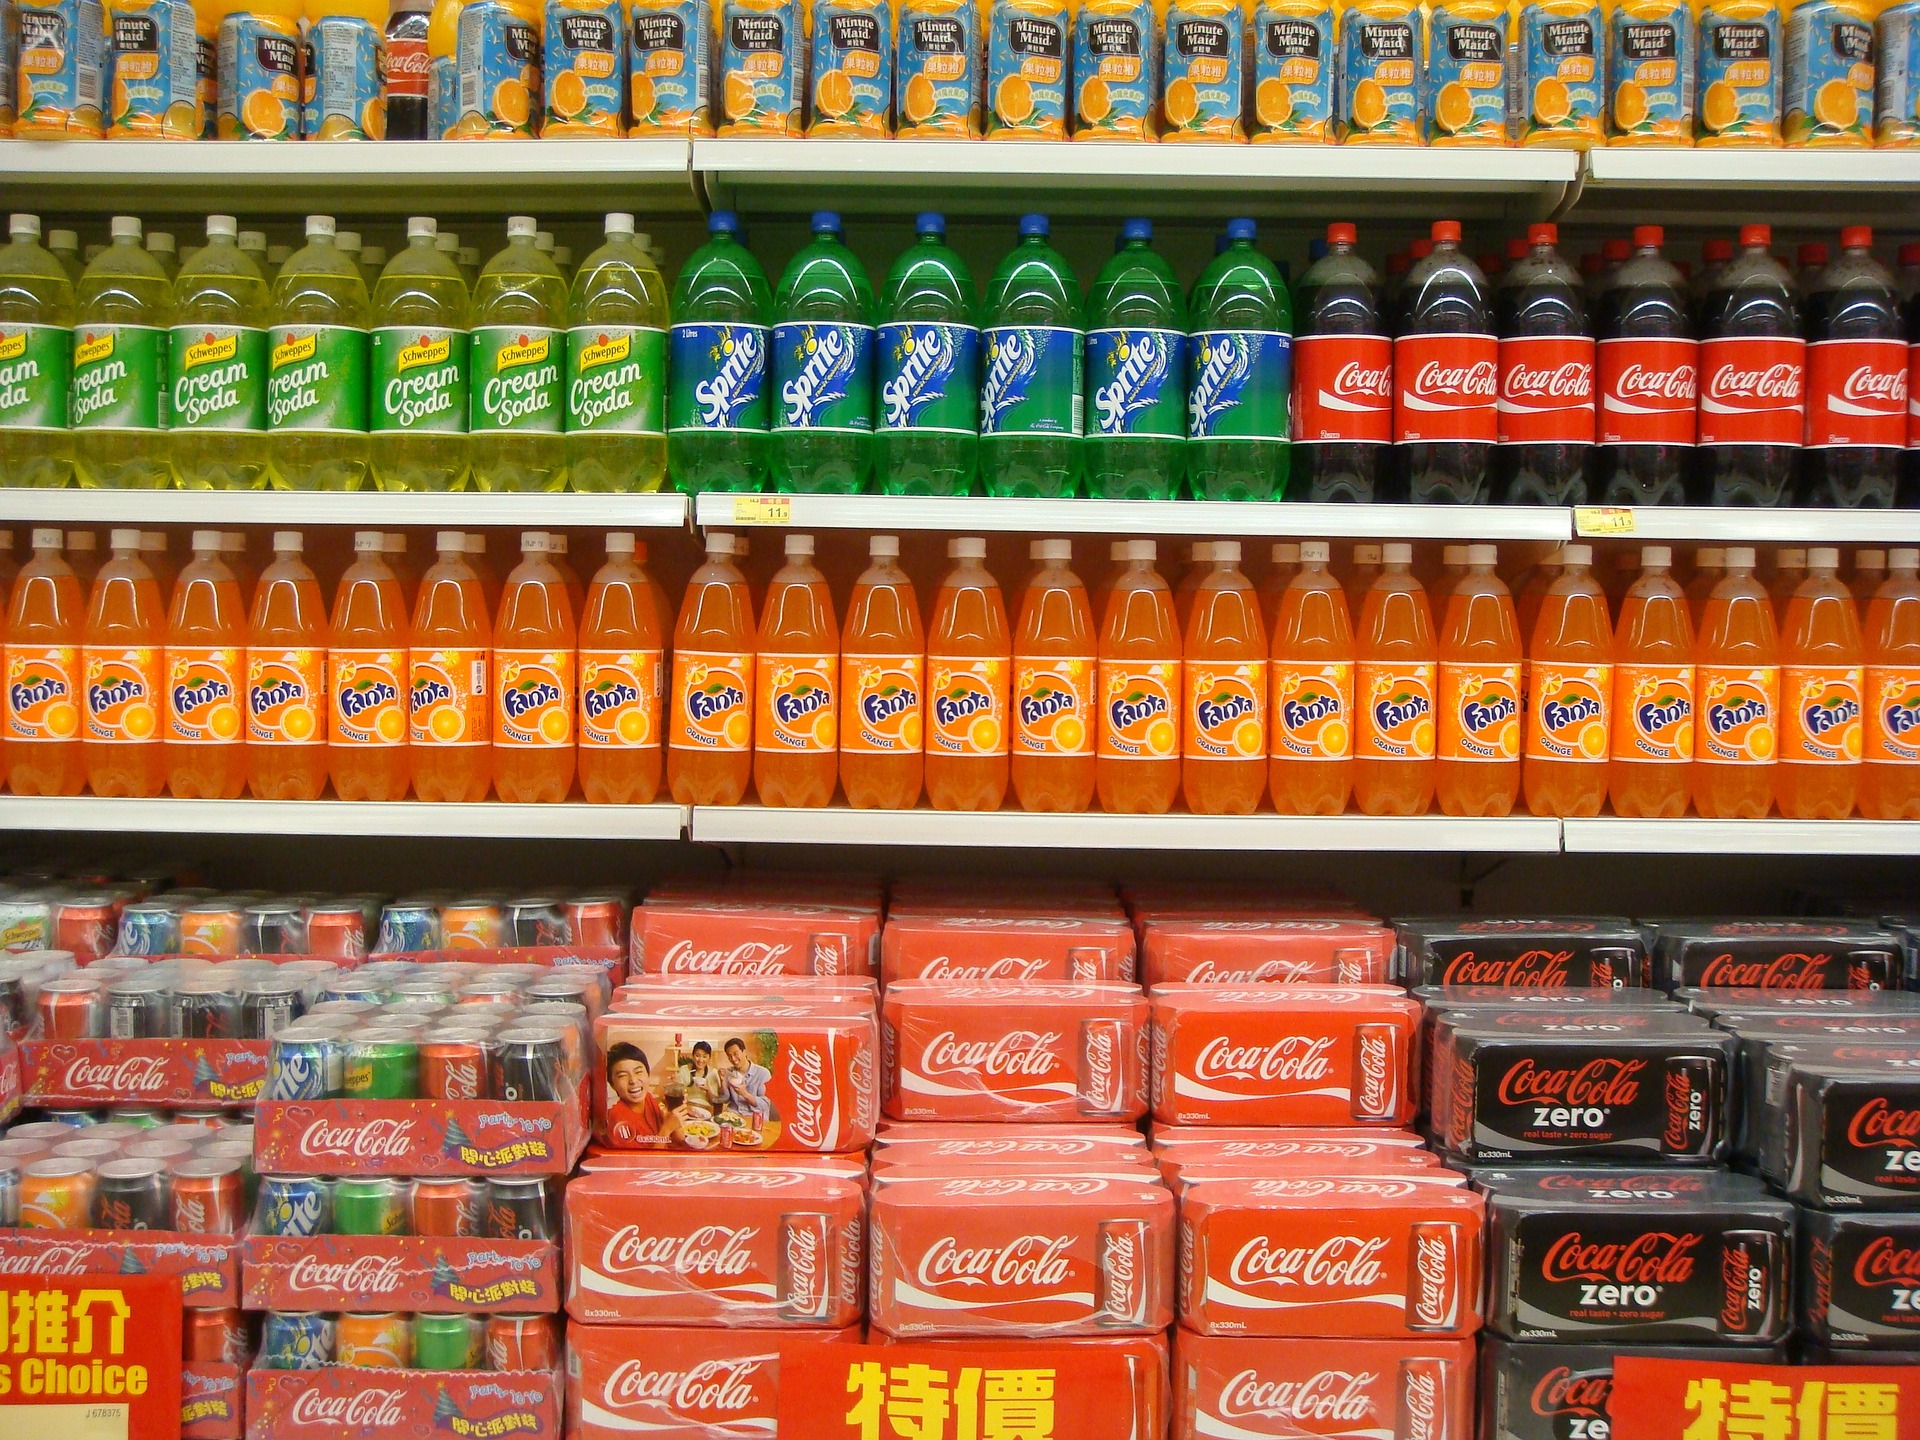 Soda on a shelf in a store.